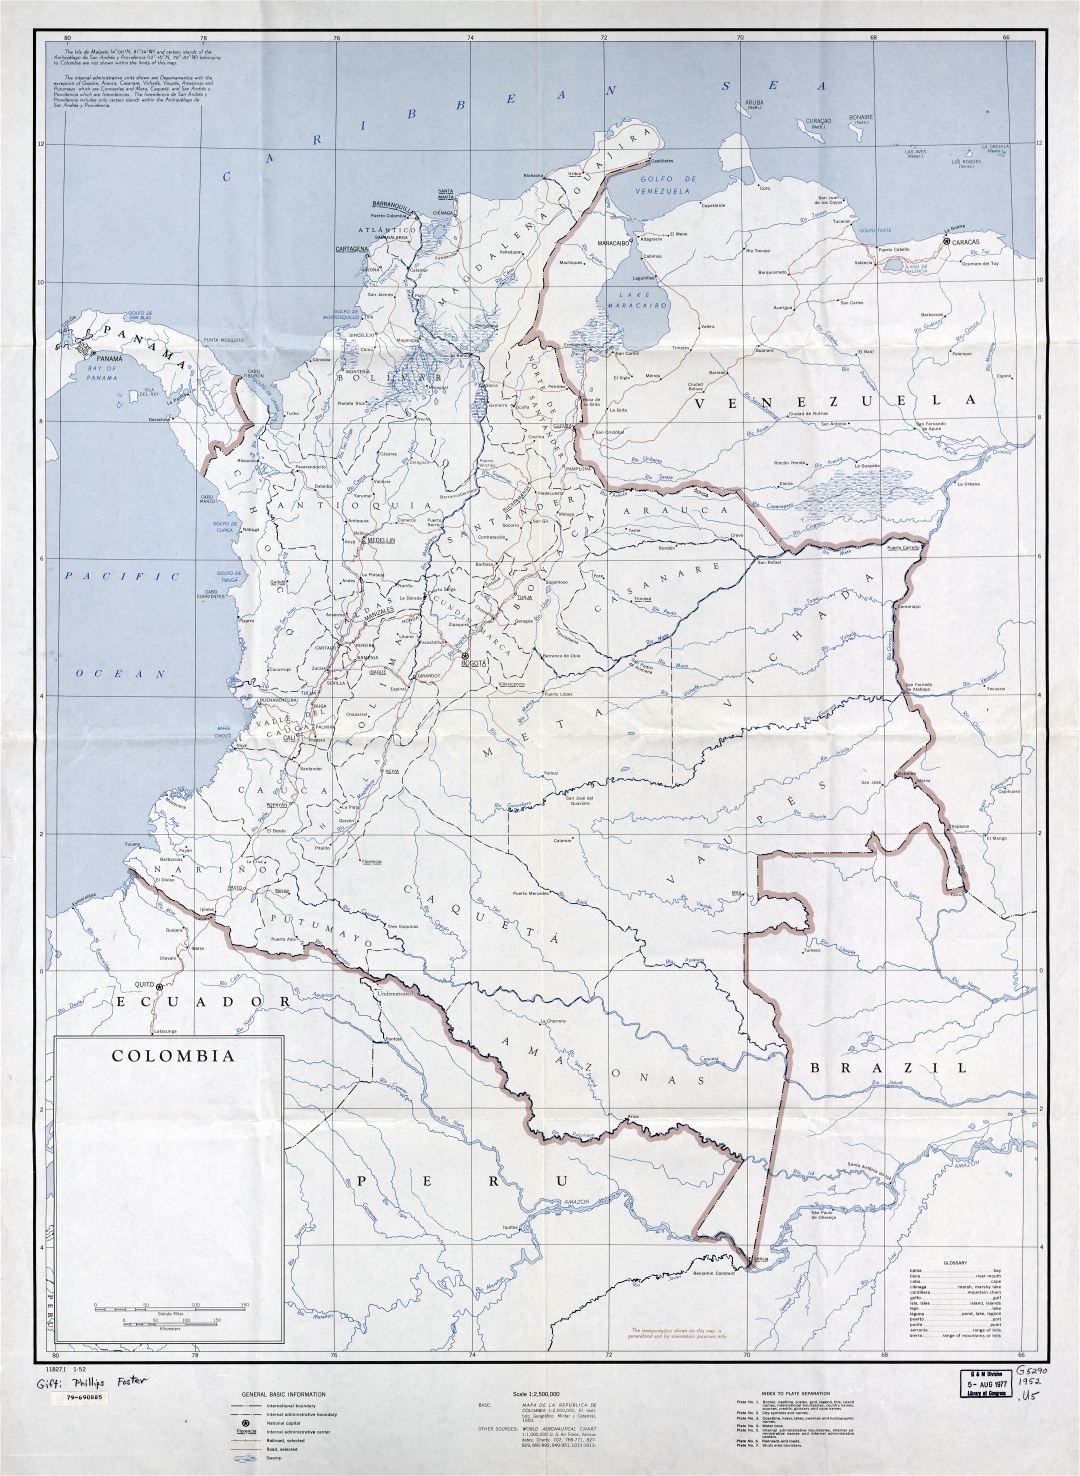 Детальная политическая и административная карта Колумбии в высоком разрешении с пометками городов, дорог и железных дорог - 1952